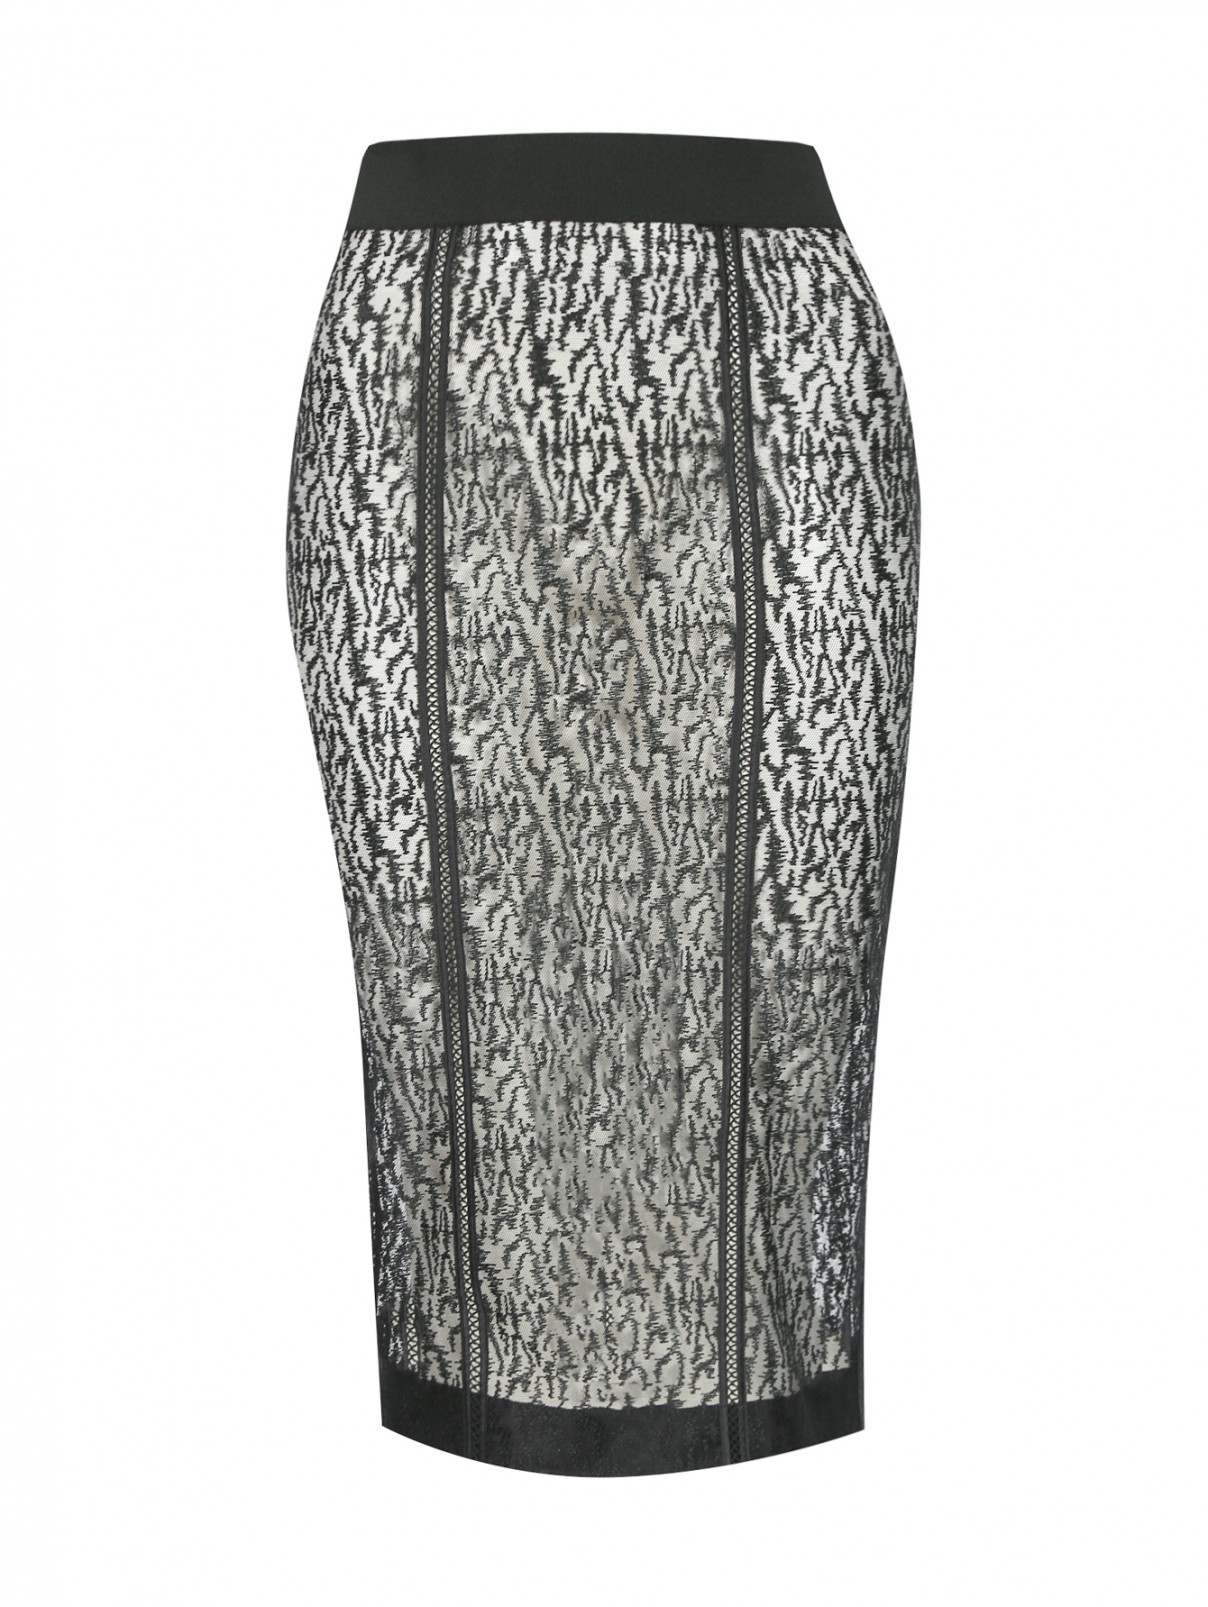 Прозрачная юбка из сетки с вышивкой La Perla  –  Общий вид  – Цвет:  Черный